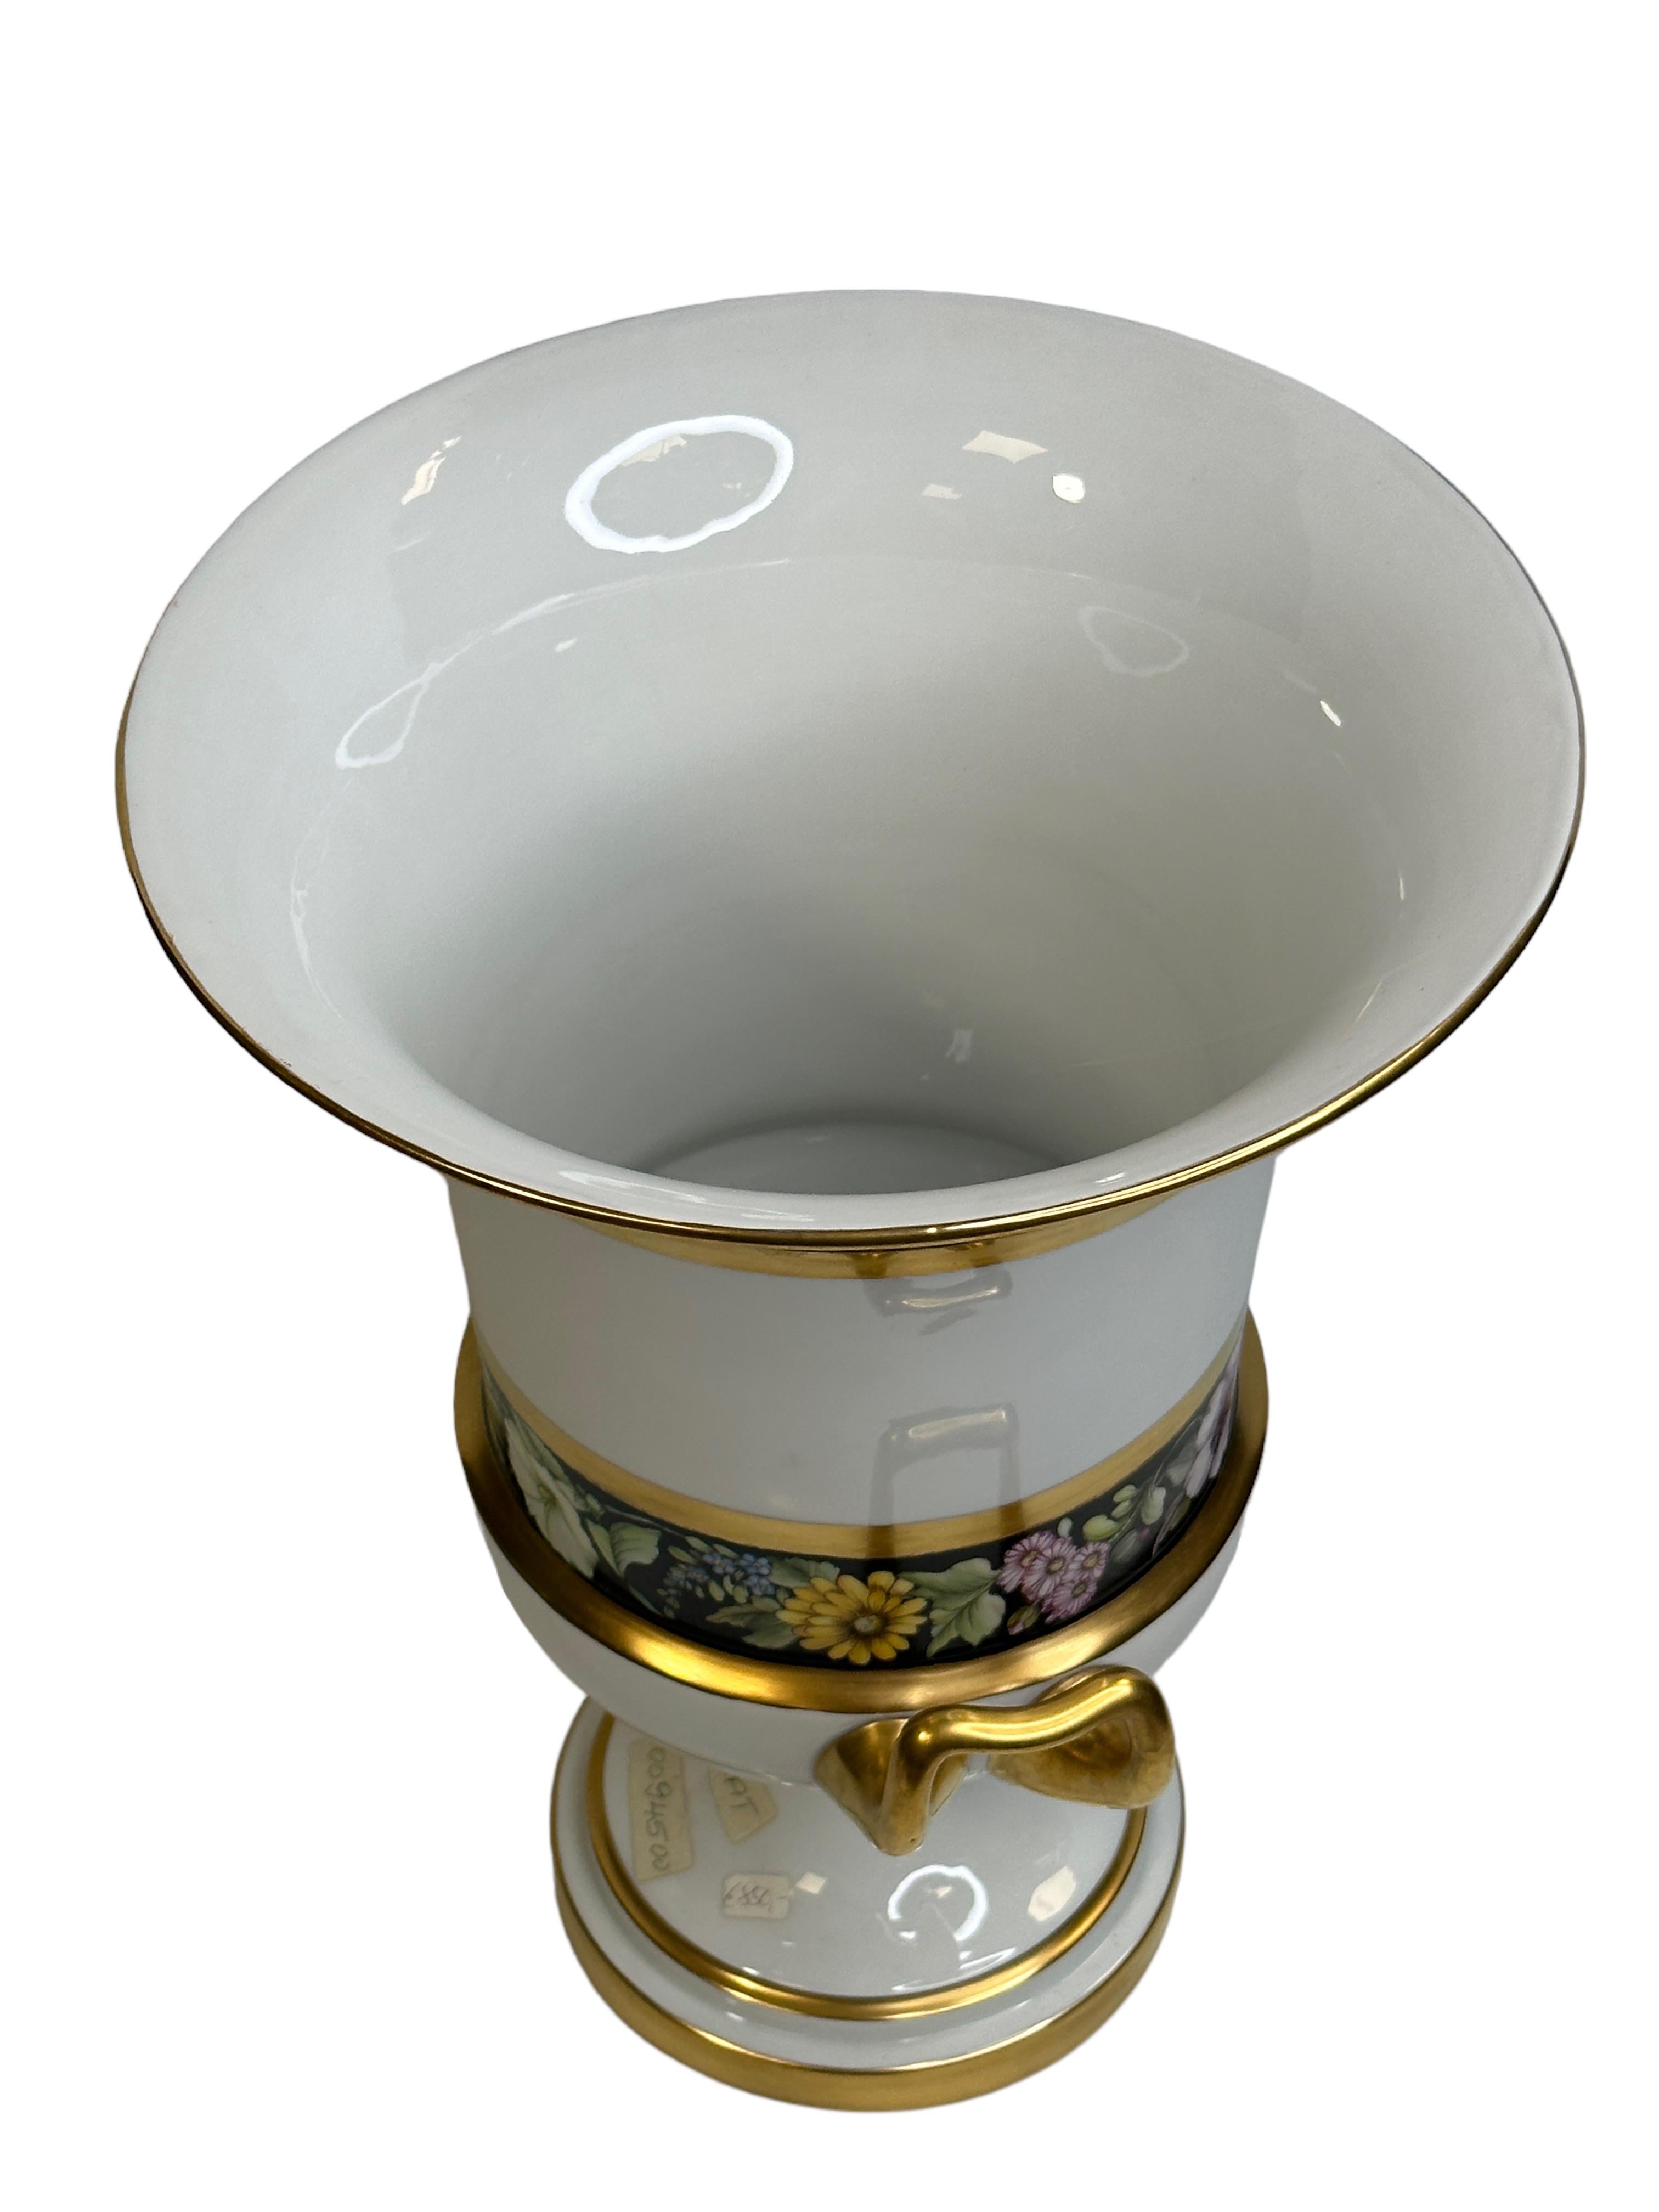 Porcelain Exceptional Fürstenberg Pedestal Medici form Twin Handled Urn Vase Unique Sample For Sale